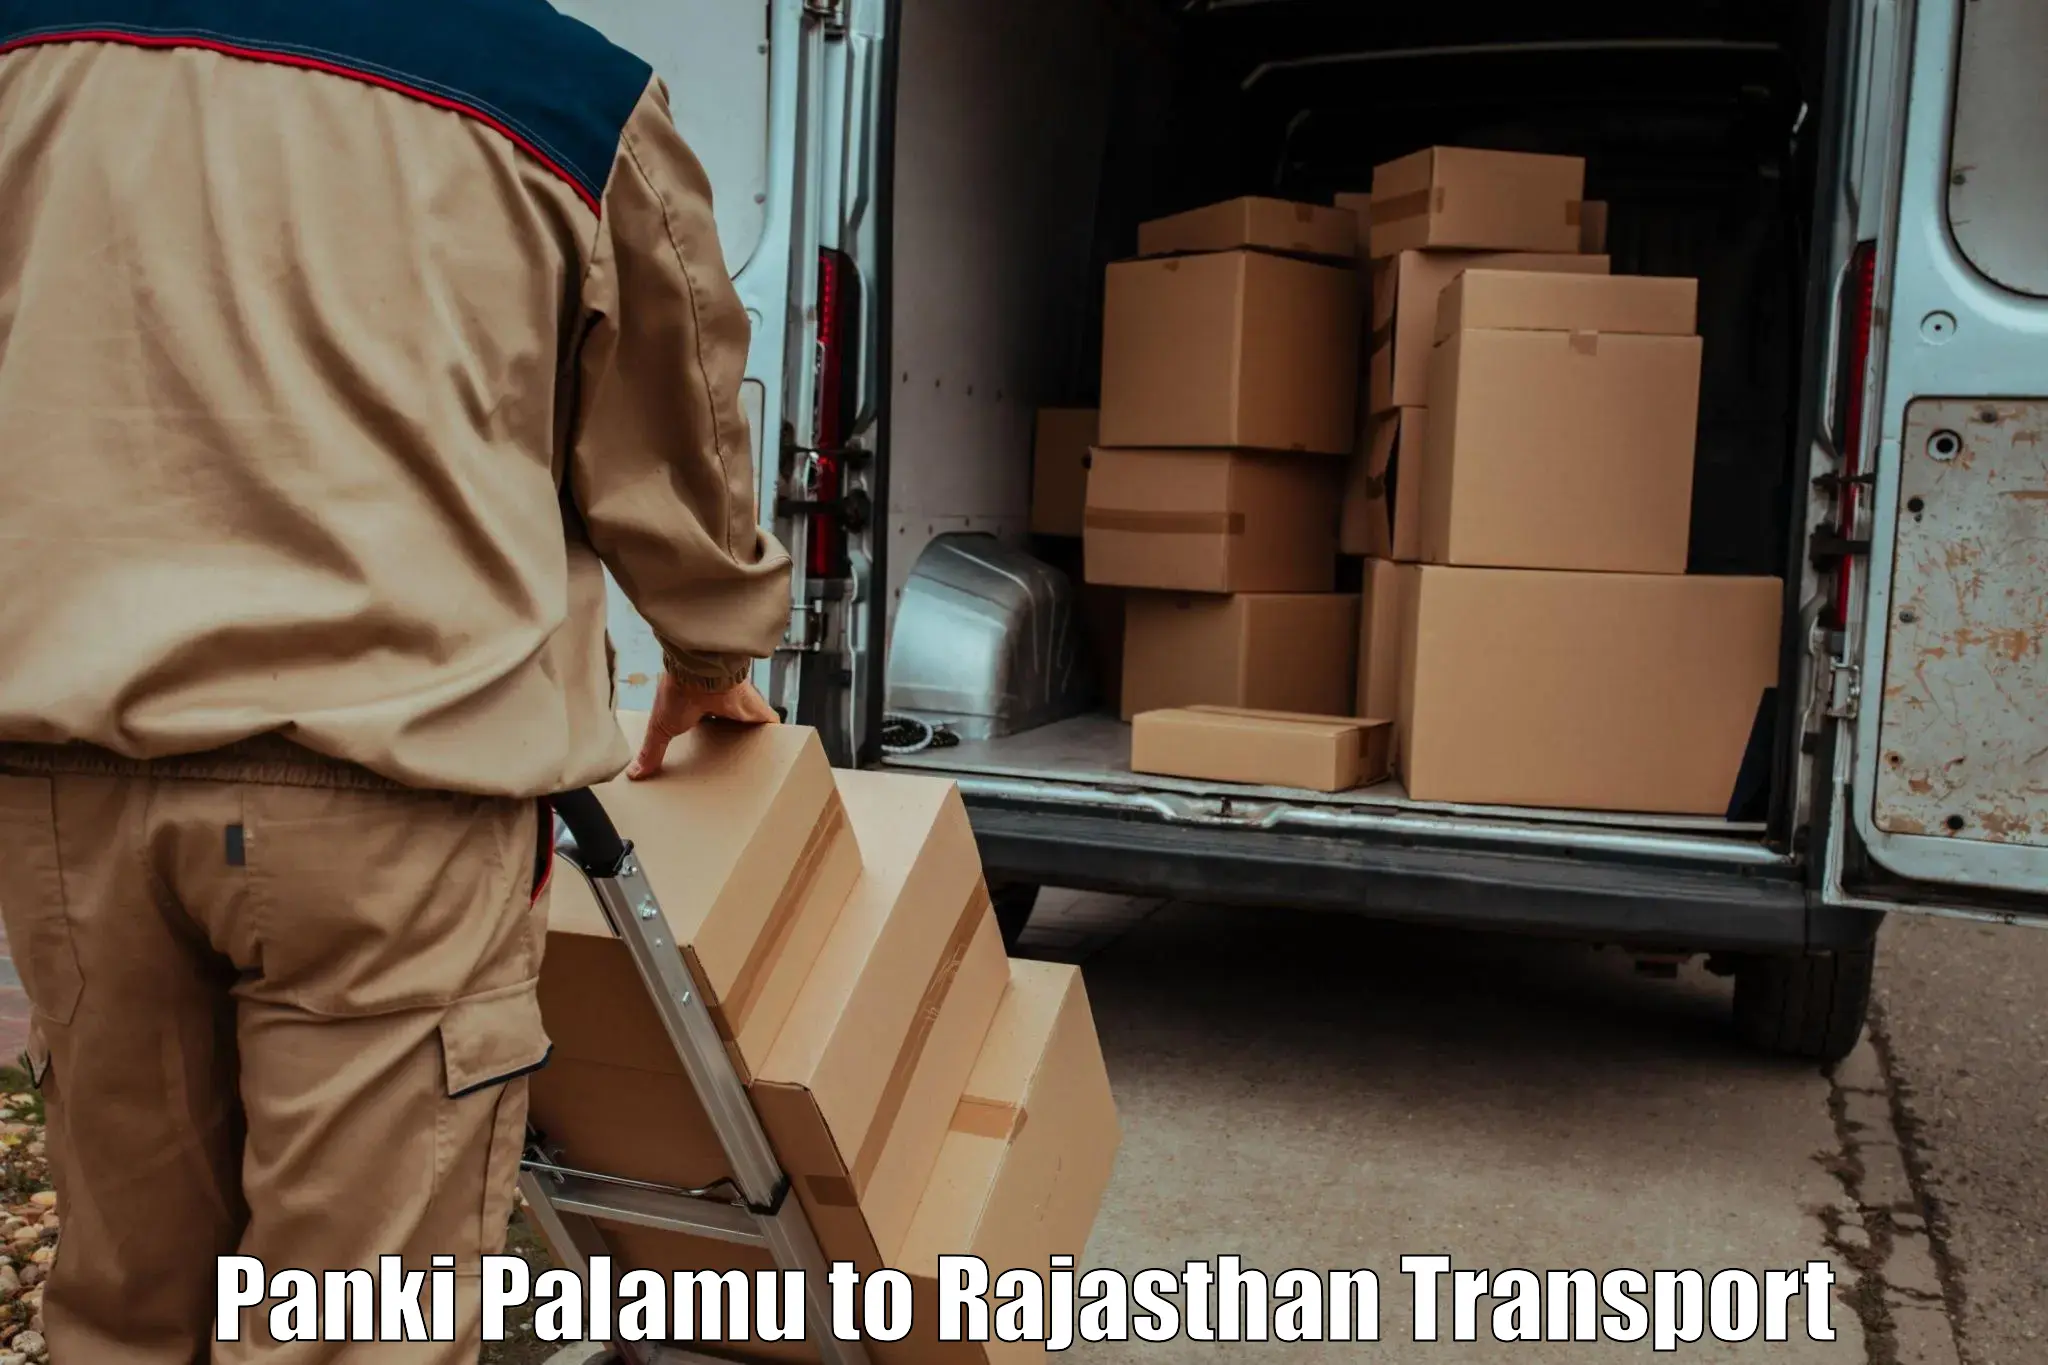 Daily transport service Panki Palamu to NIT Jaipur